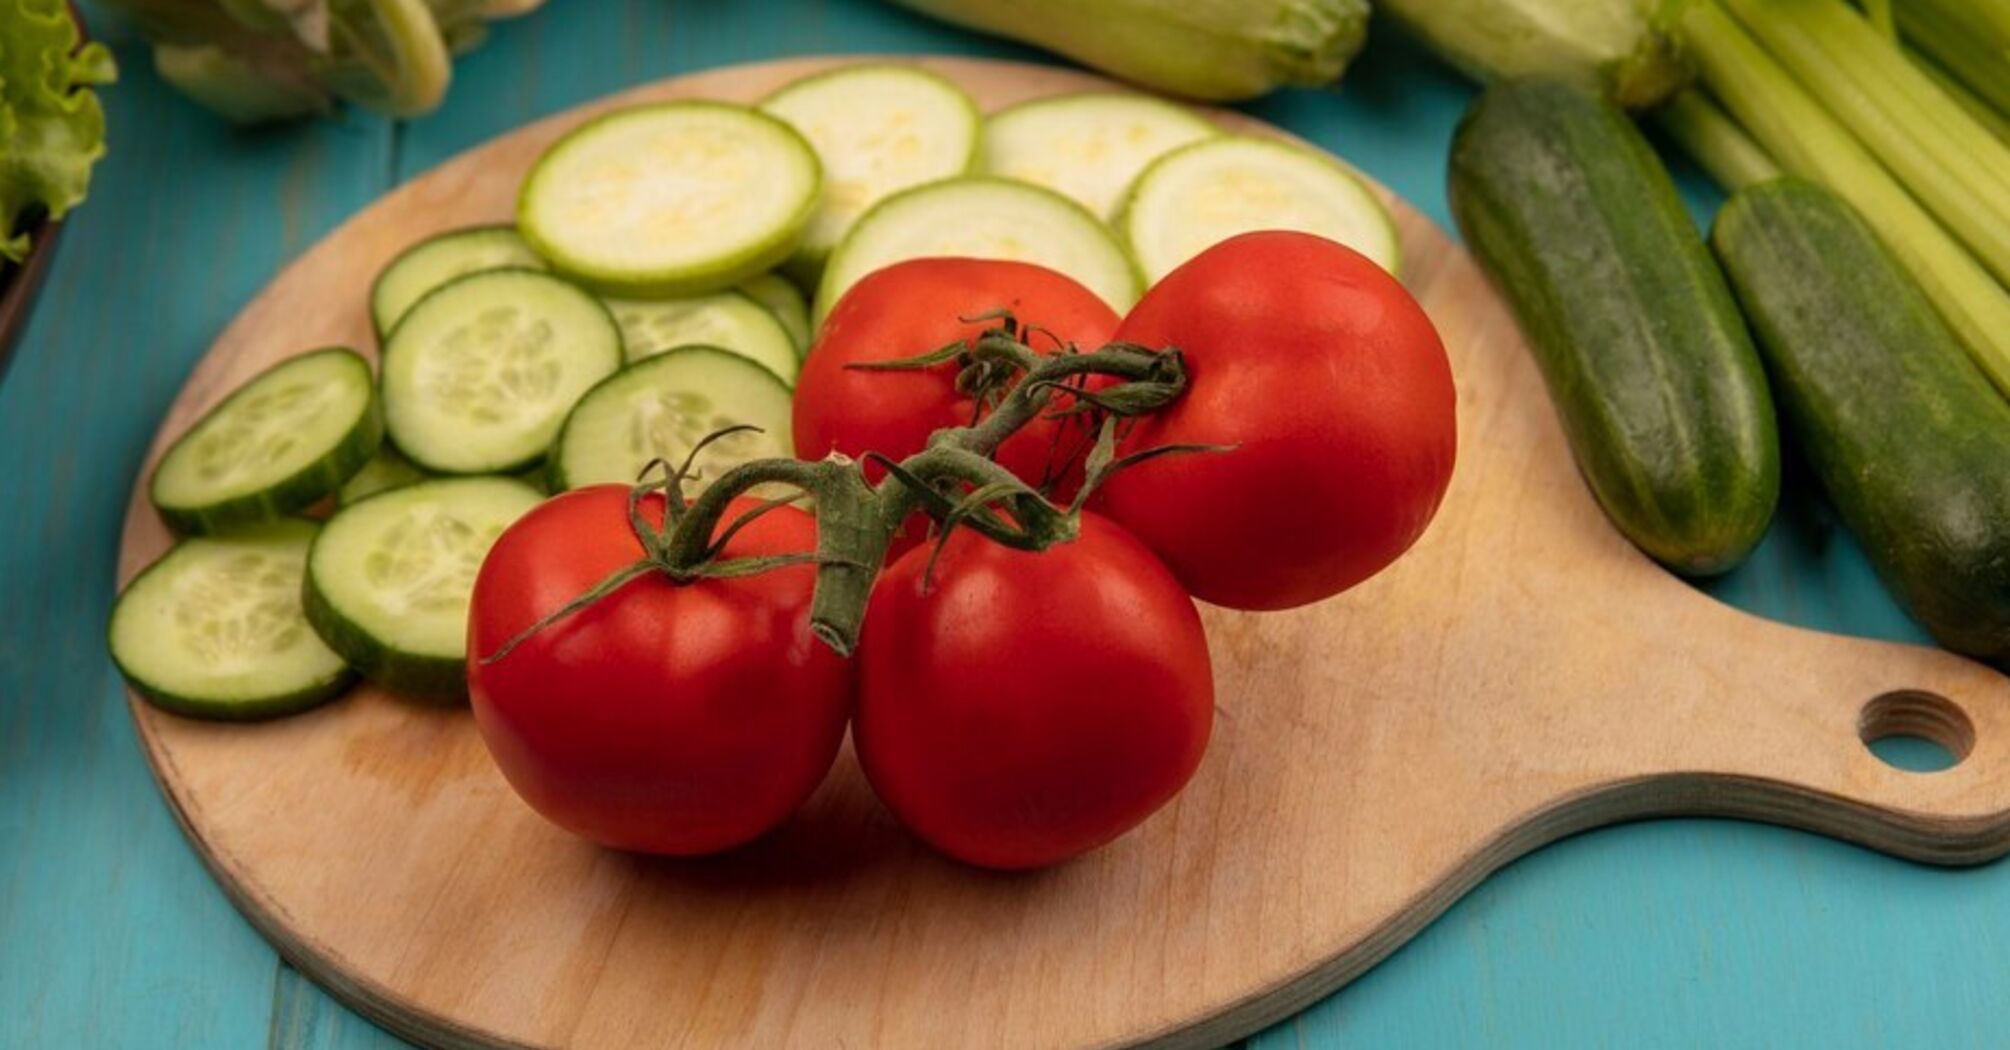 Может привести к неожиданным последствиям: врачи раскрывают риски потребления огурцов вместе с помидорами